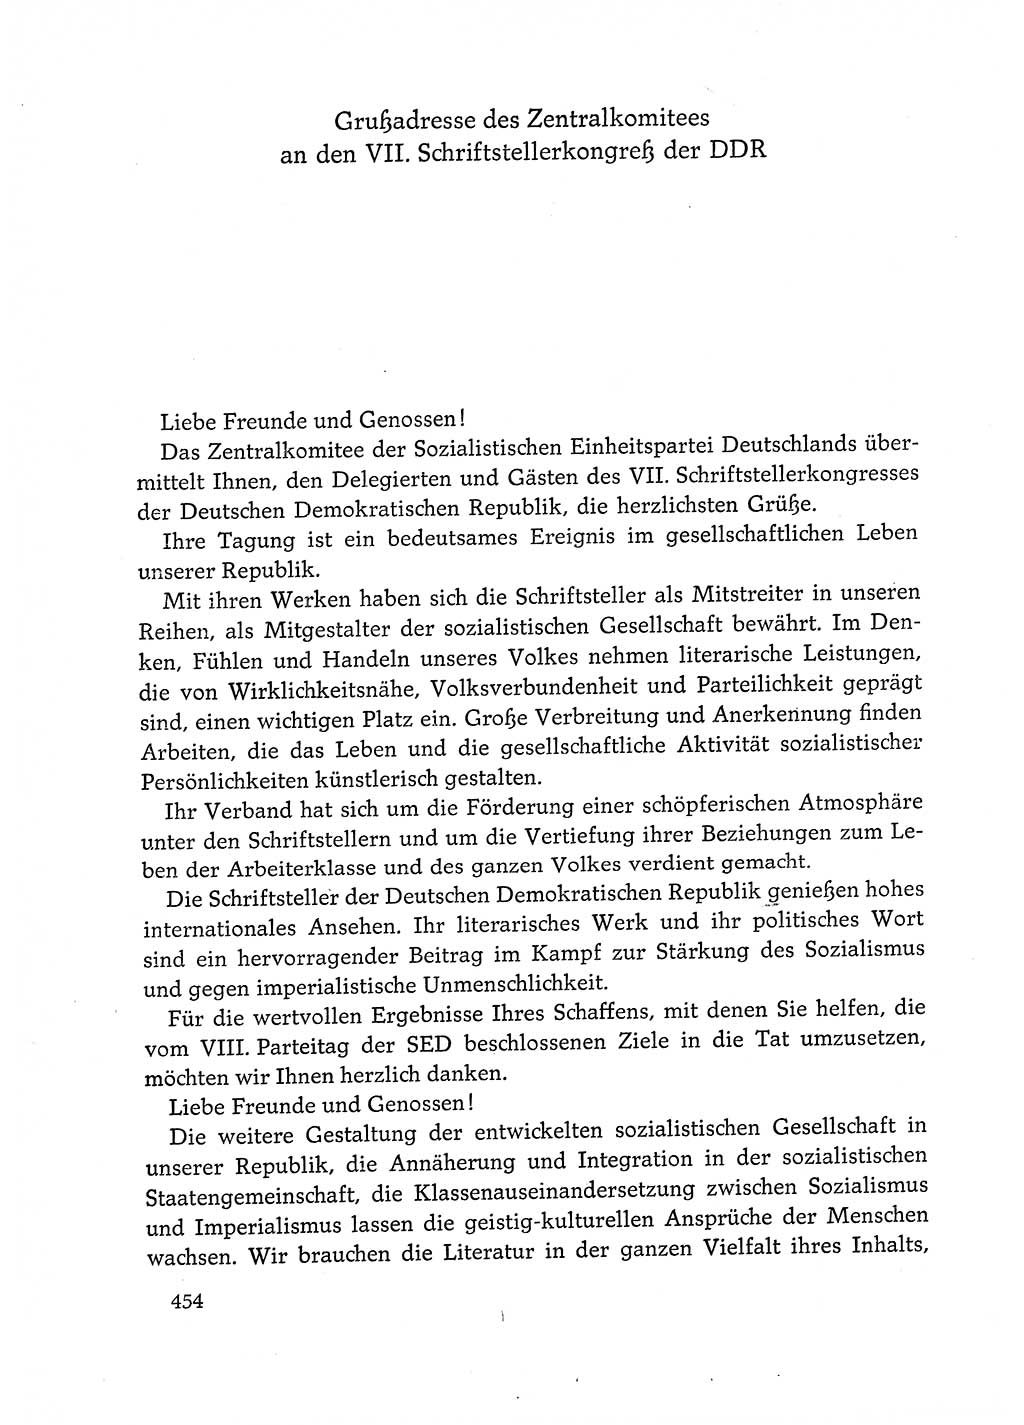 Dokumente der Sozialistischen Einheitspartei Deutschlands (SED) [Deutsche Demokratische Republik (DDR)] 1972-1973, Seite 454 (Dok. SED DDR 1972-1973, S. 454)